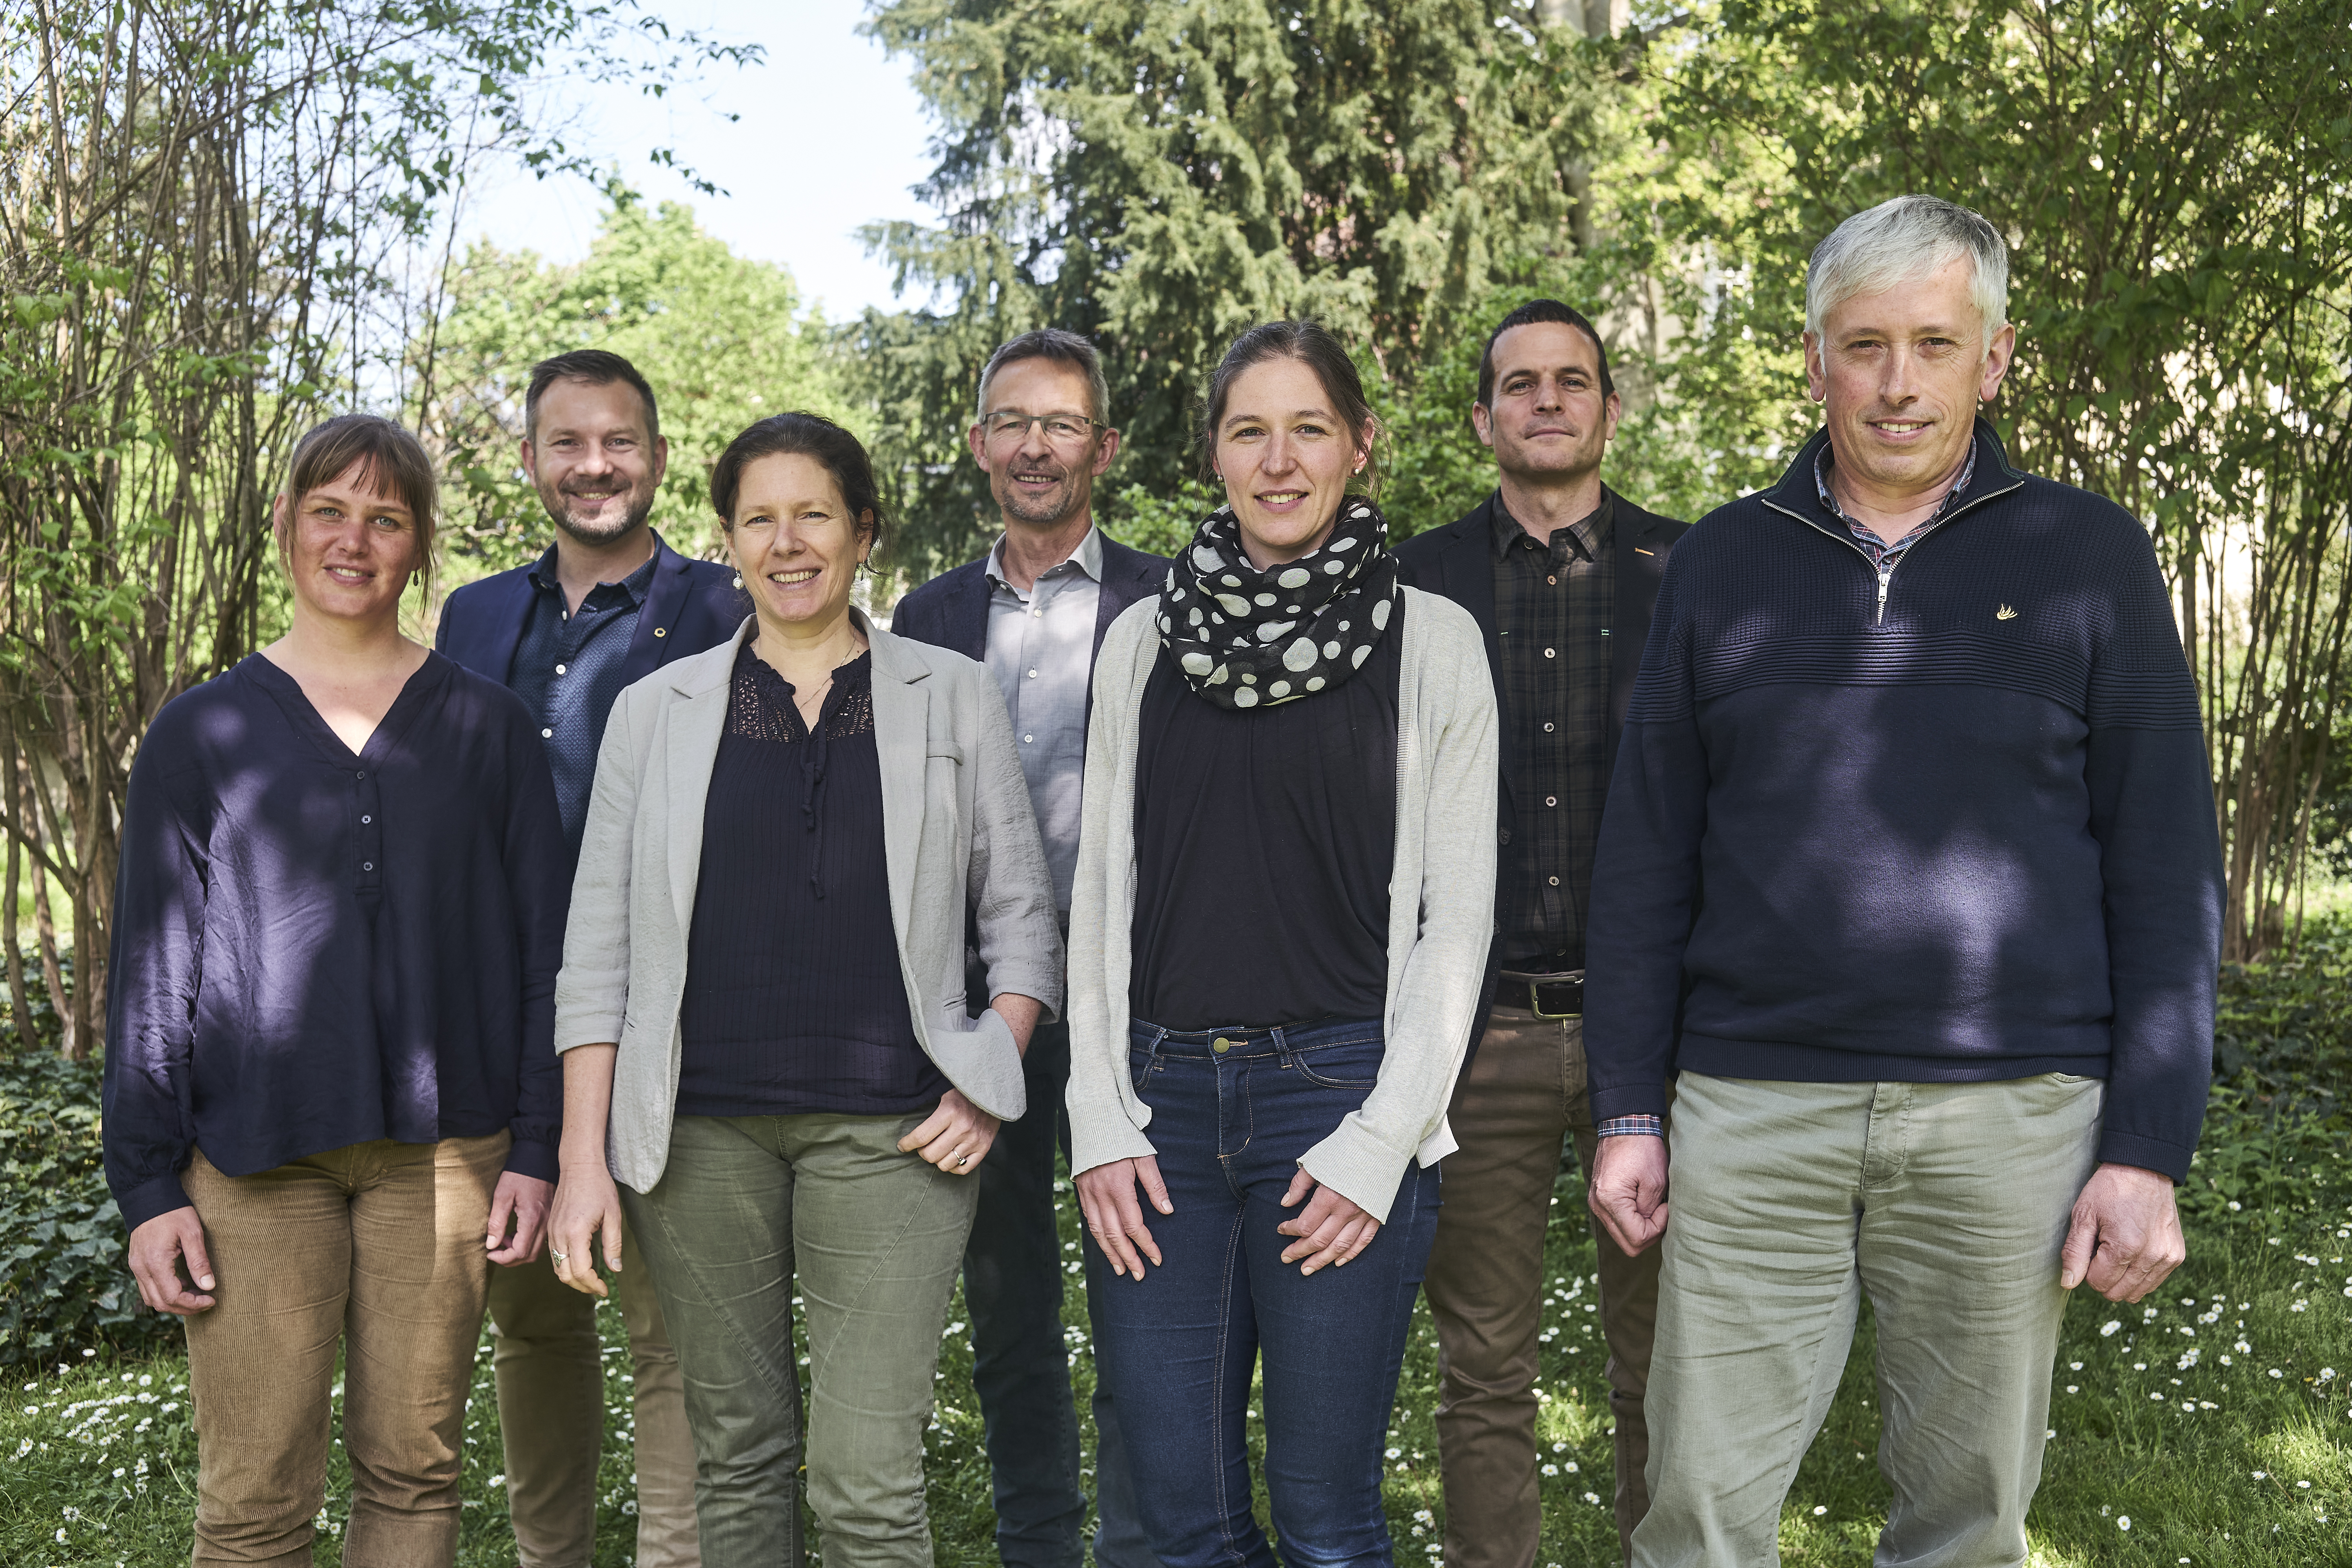 Le comité de direction de Bio Suisse (de gauche à droite) : Rahel Beglinger-Urner, Cédric Guillod, Karine Contat, Urs Brändli, Dora Fuhrer, Milo Stoecklin, Sepp Bircher. Copyright Bio Suisse